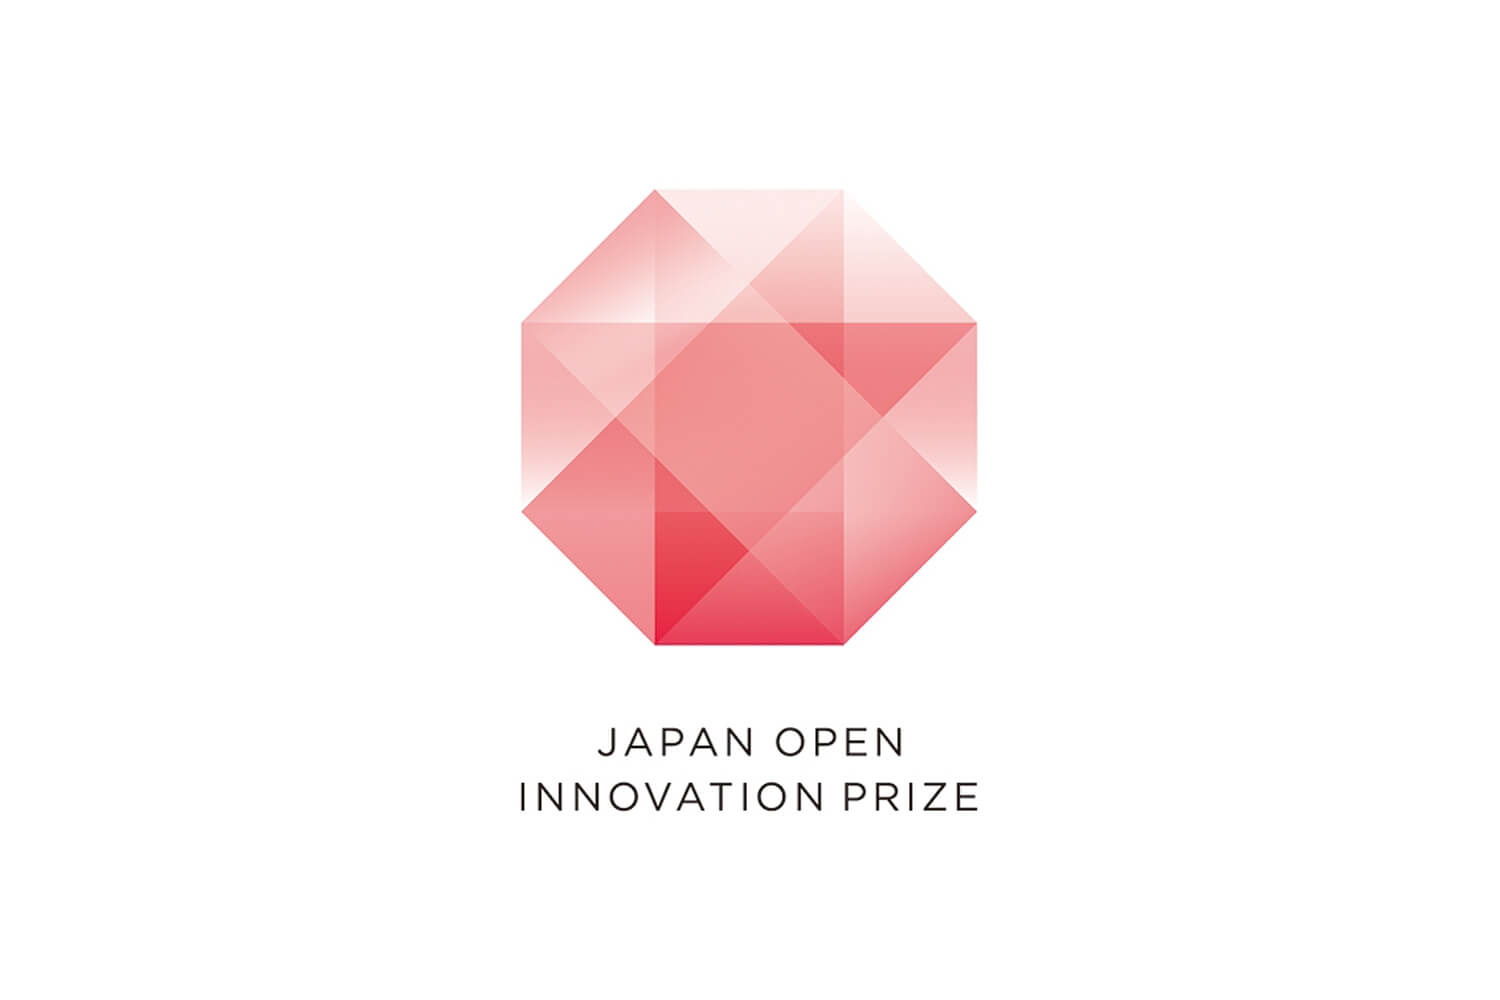 Japan Open Innovation Prize